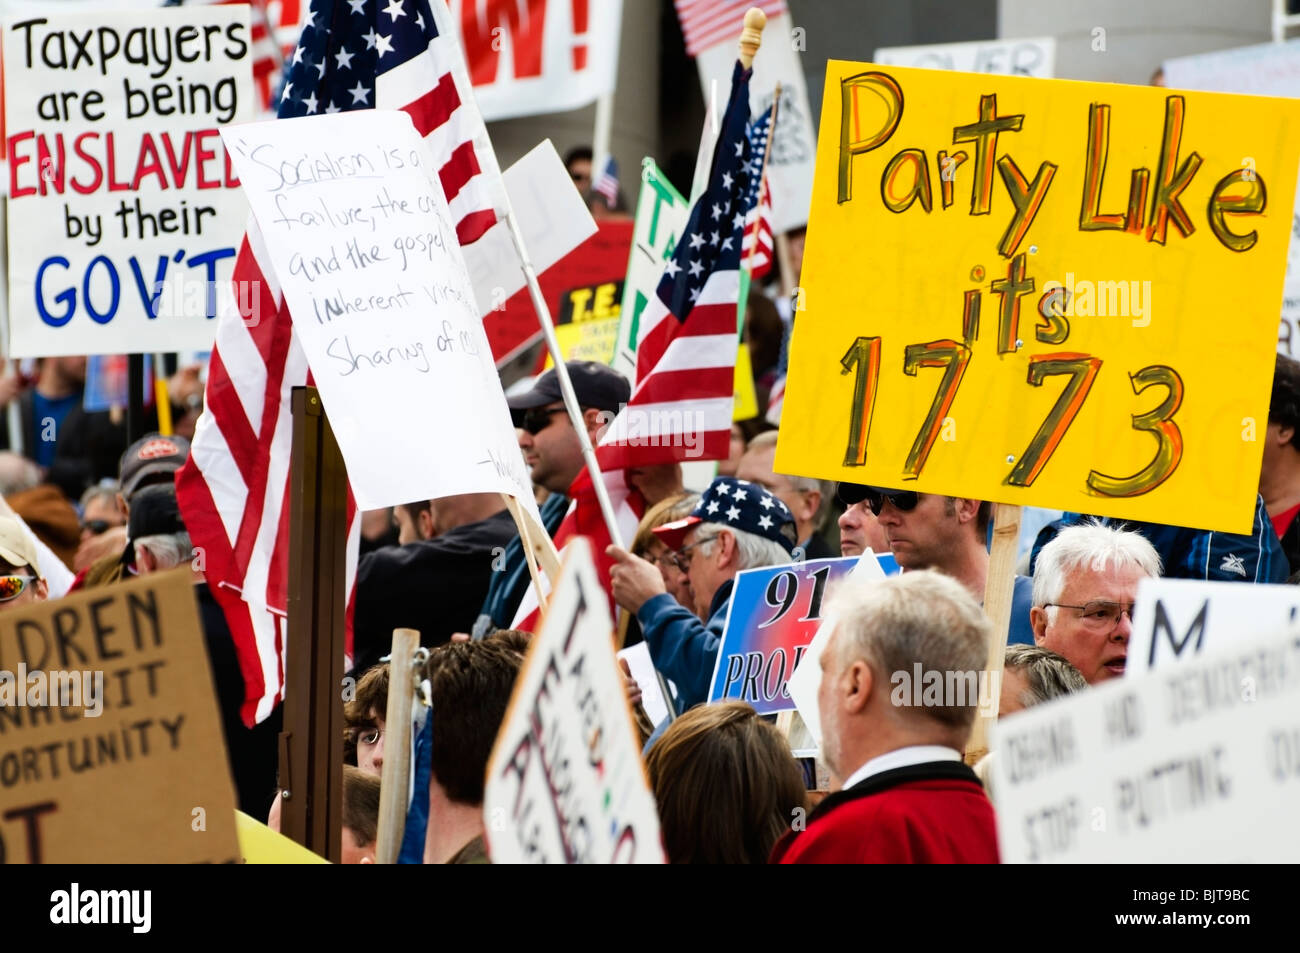 Une grande foule de personnes se retrouvent sur les marches de l'édifice du Capitole de Washington à Olympie pour protester contre les impôts à un Tea Party Rally. Banque D'Images